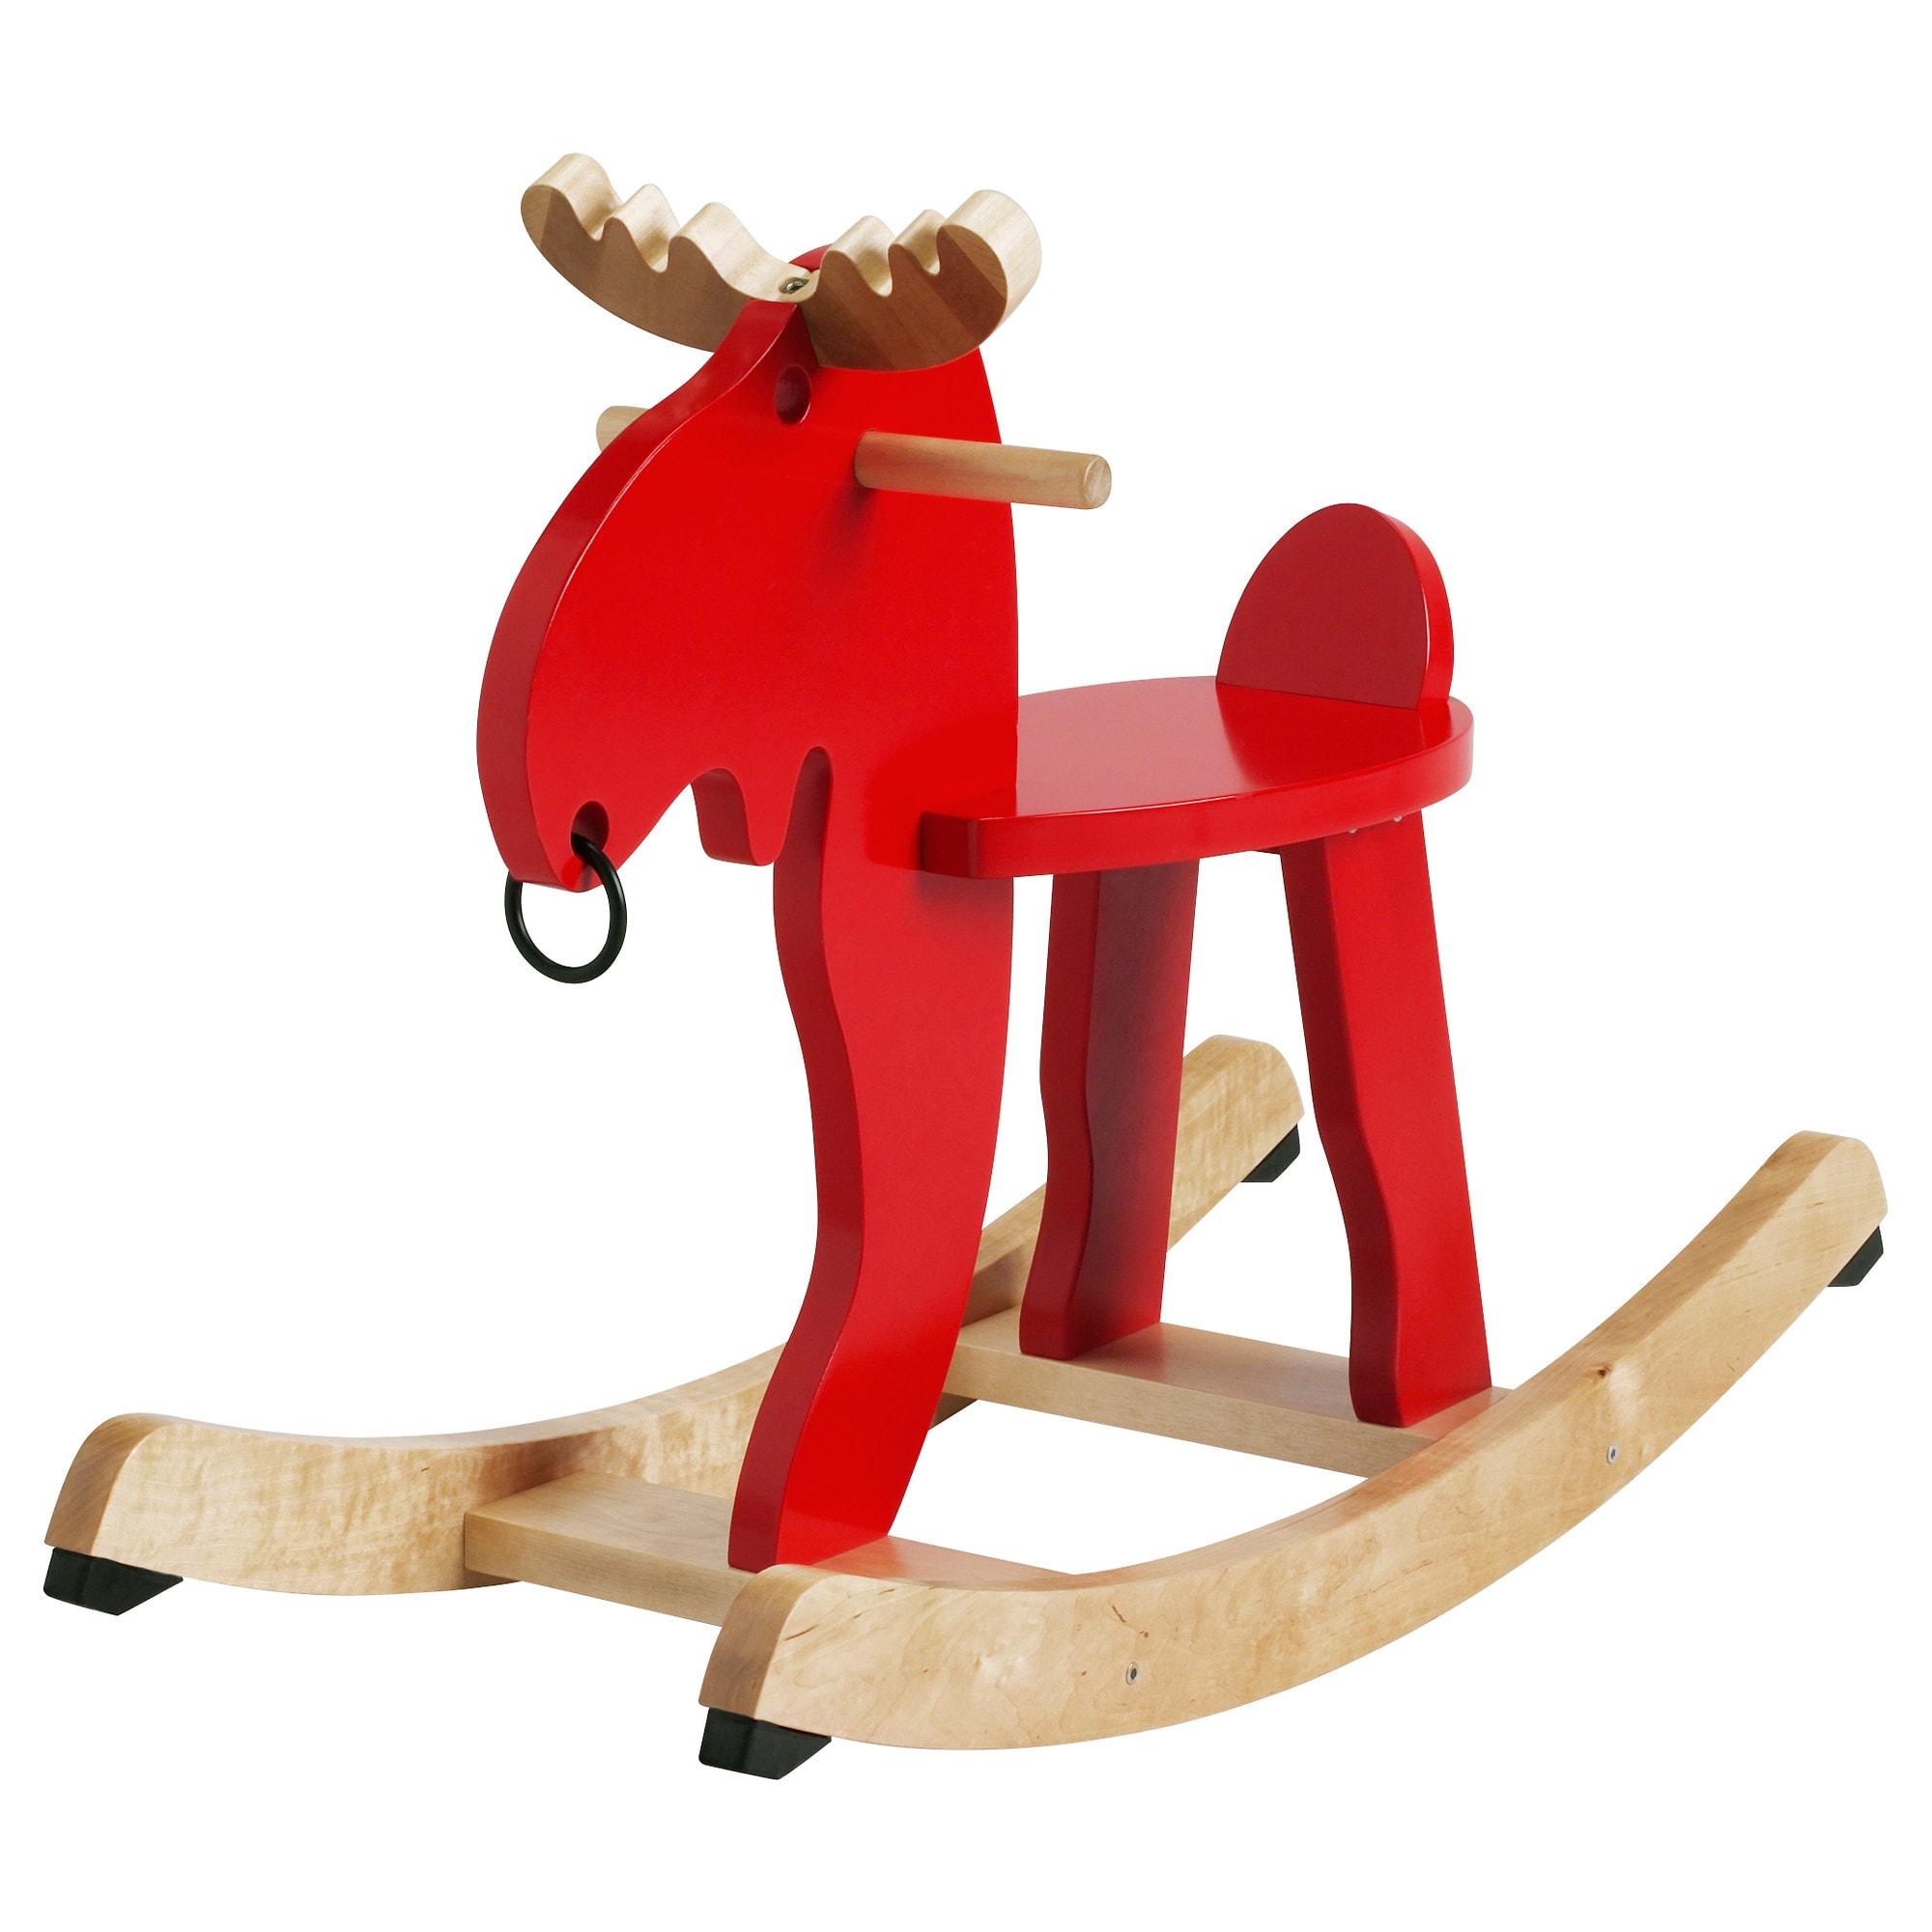 IKEA EKORRE เอียคกอเร่ เก้าอี้โยกรูปกวางมูส ม้าโยก เก้าอี้เด็ก เก้าอี้โยก (สีแดง) ทำจากไม้ยางพารา